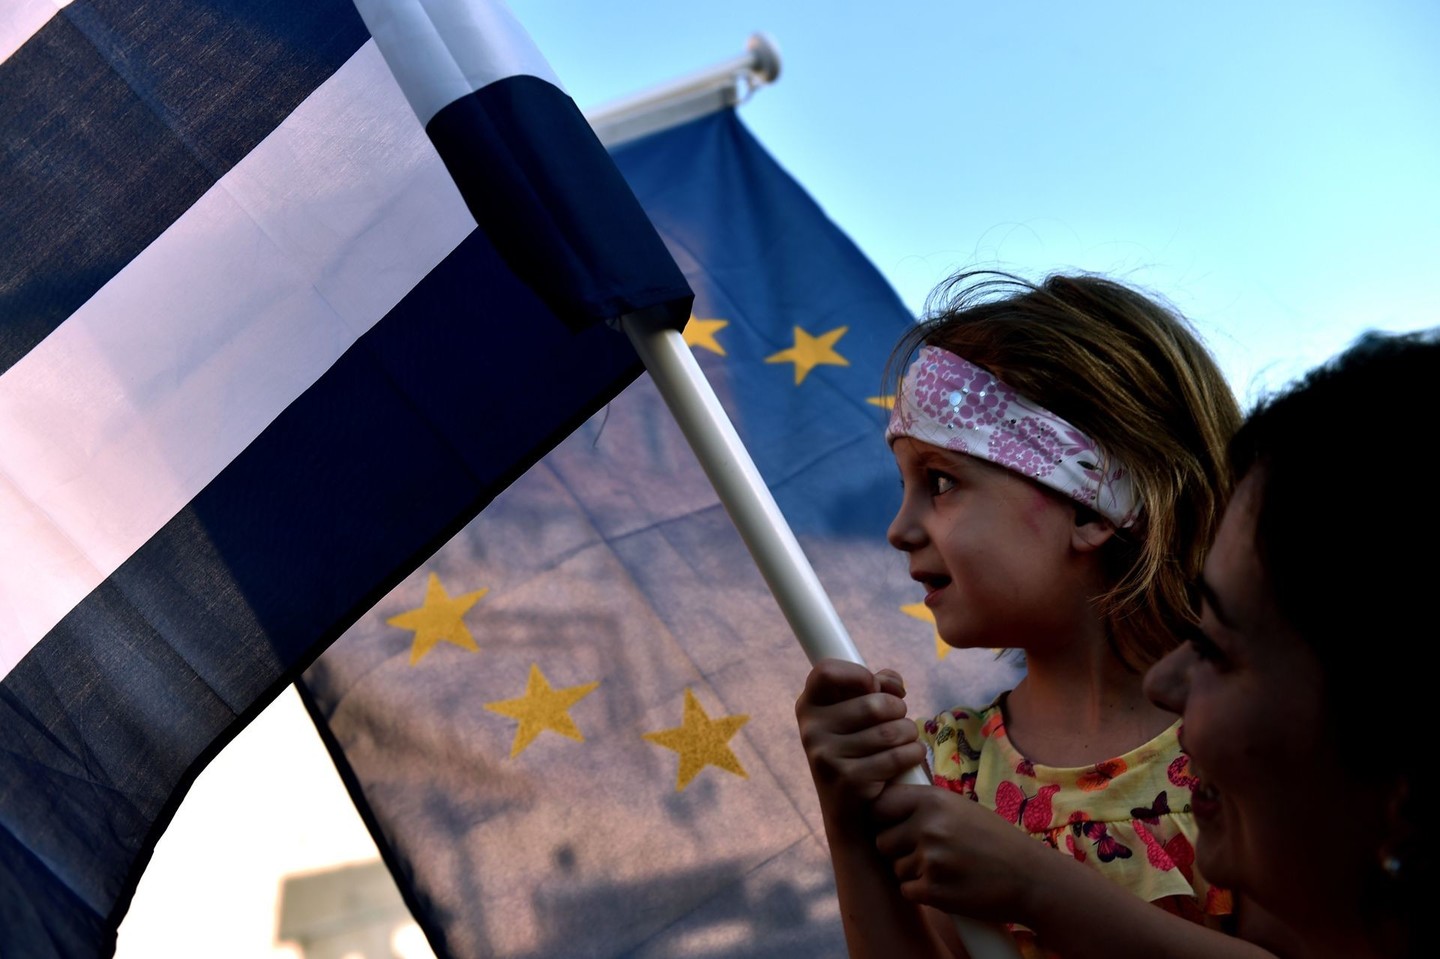 Graikijos gyventojai protestais reikalauja šalies vadovų susitarti su kreditoriais.<br>AFP/Scanpix nuotr.